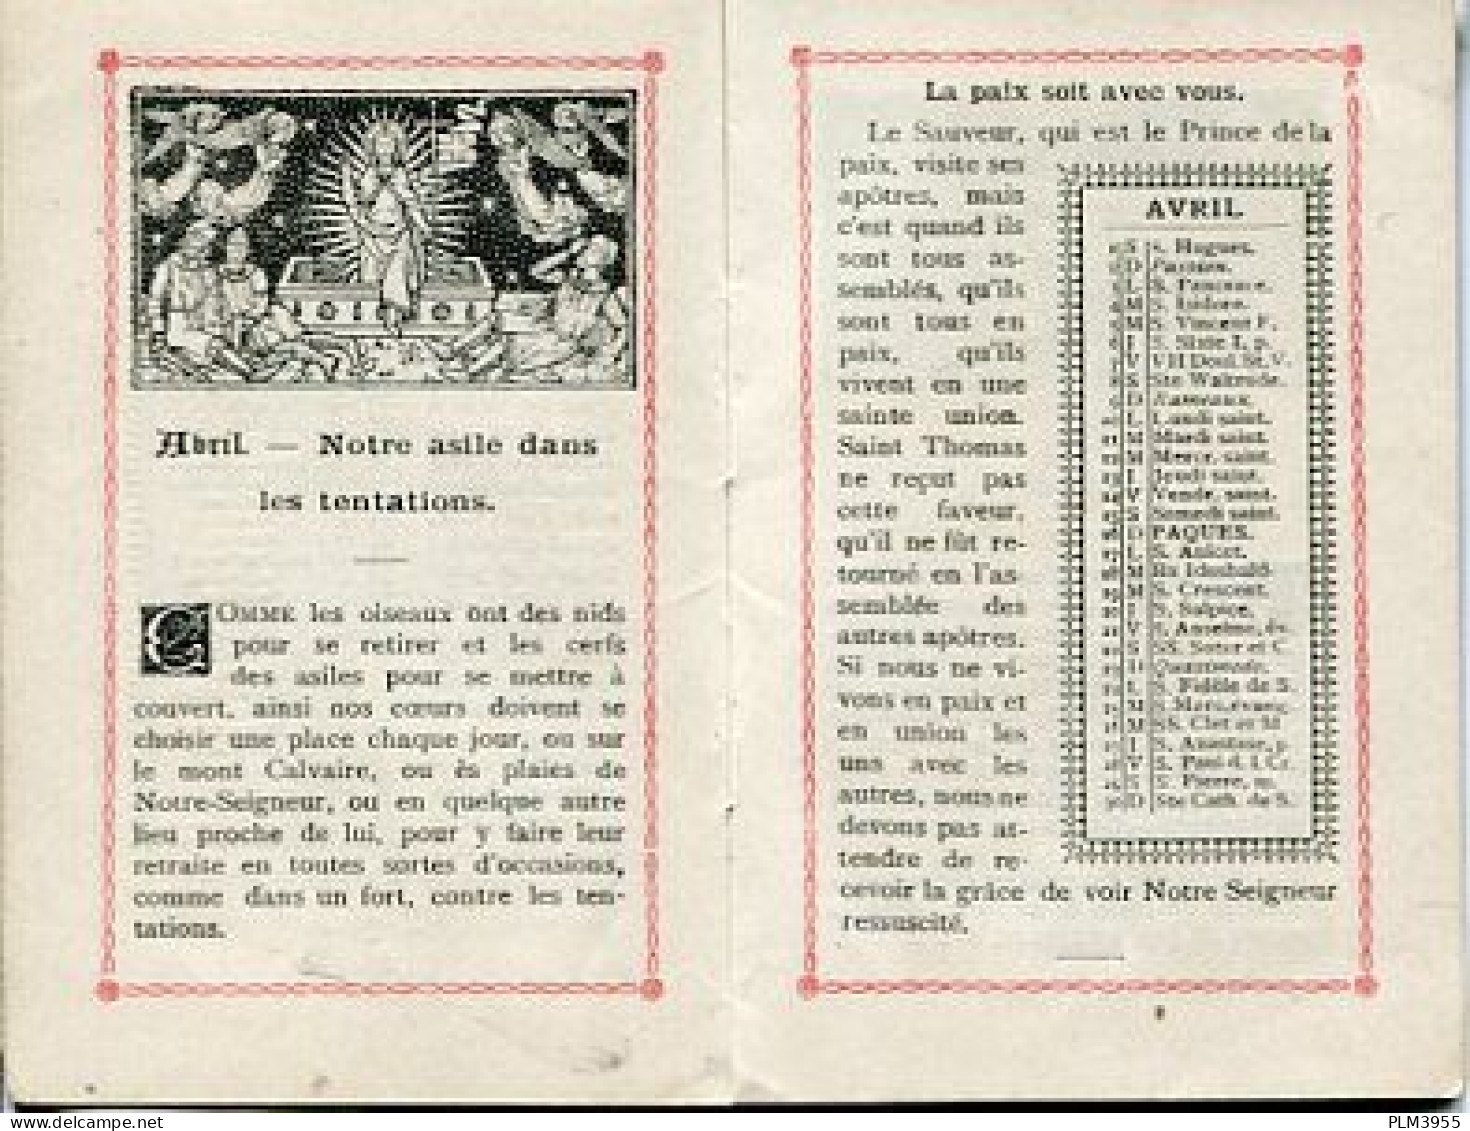 7 calendriers 1948 1952 1911 1977 1950 1949 1912 Bernadette Nevers stoffel Boymond Georges Rives Confiseur chocolatier L